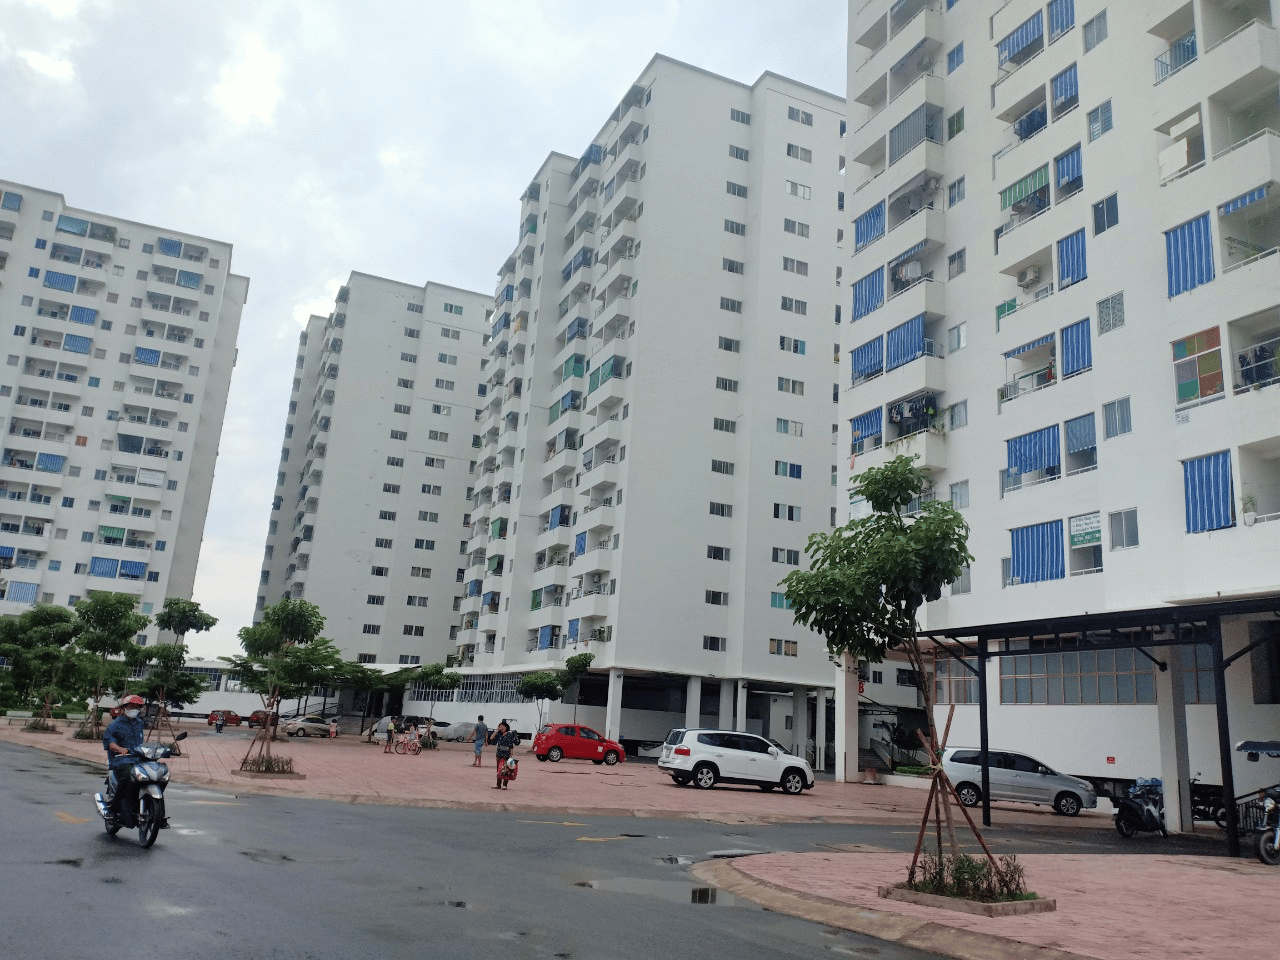 Diện tích căn hộ chung cư Lê Thành Tân Tạo quận Bình Tân là bao nhiêu m2?